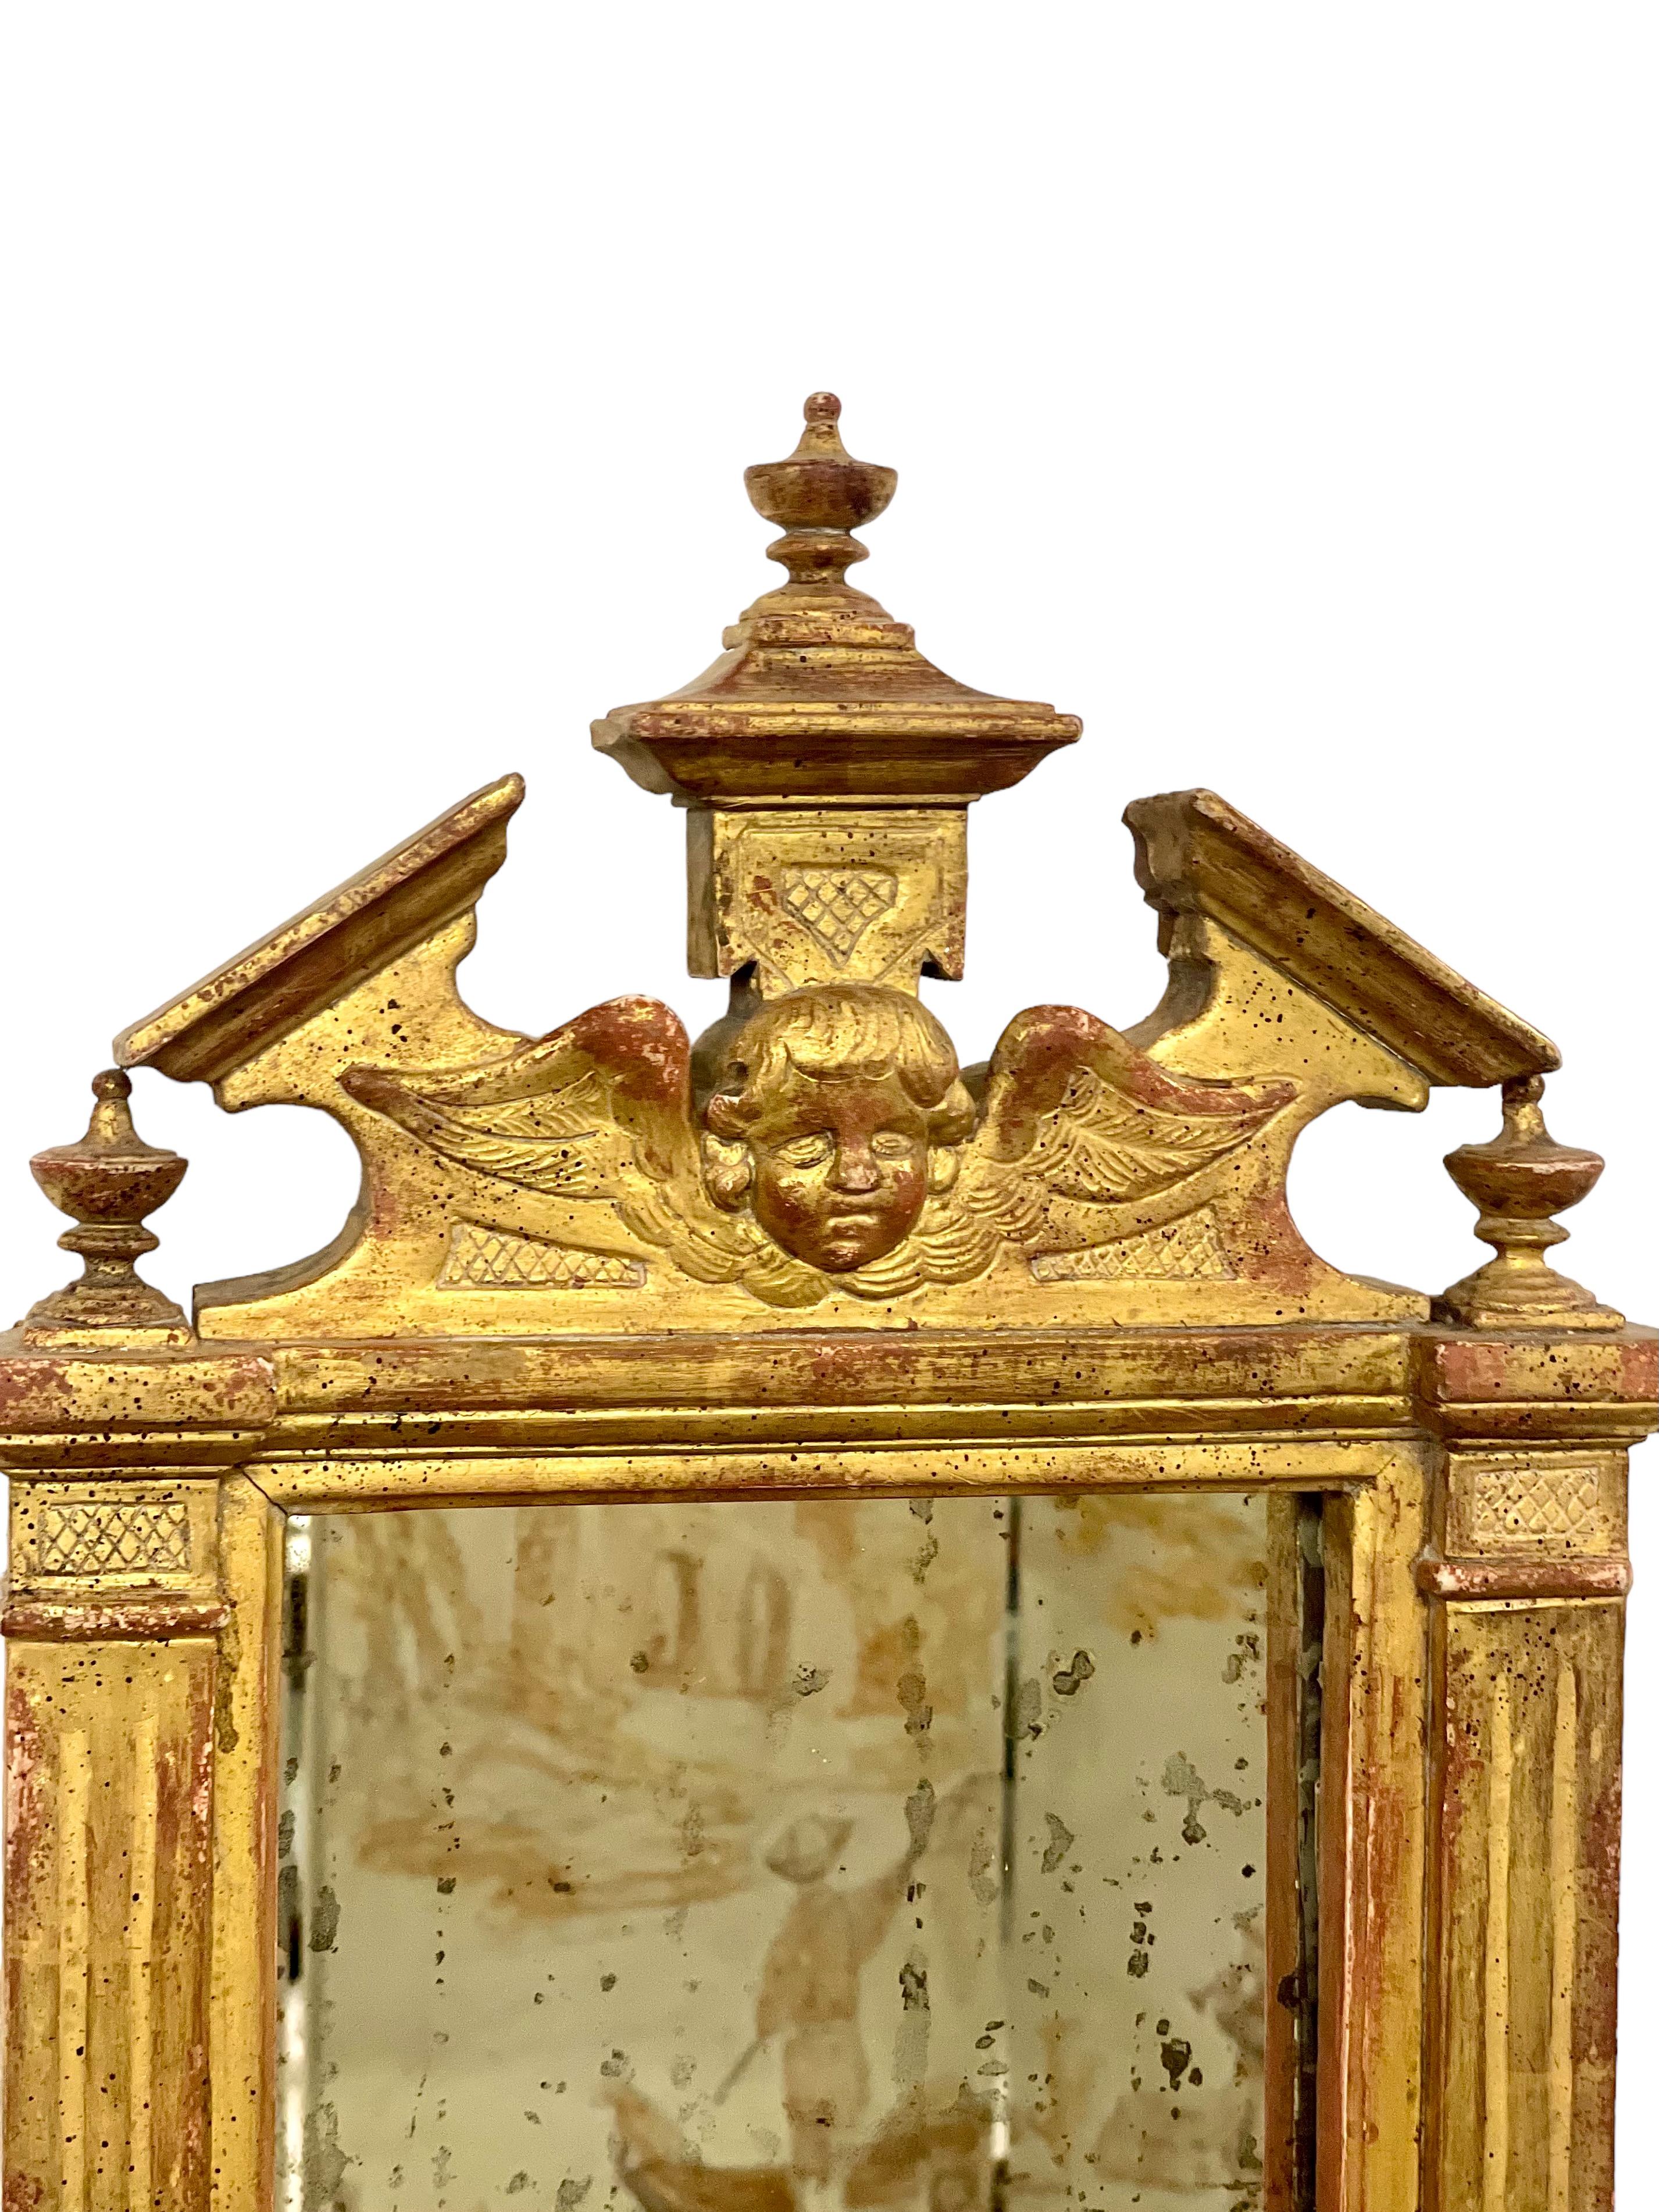 Miroir mural néoclassique de la fin du XVIIIe siècle, de style baroque, originaire d'Italie. Magnifiquement sculpté, son cadre en bois doré présente un fronton triangulaire, centré par un chérubin ailé flanqué et surmonté de trois cassolettes